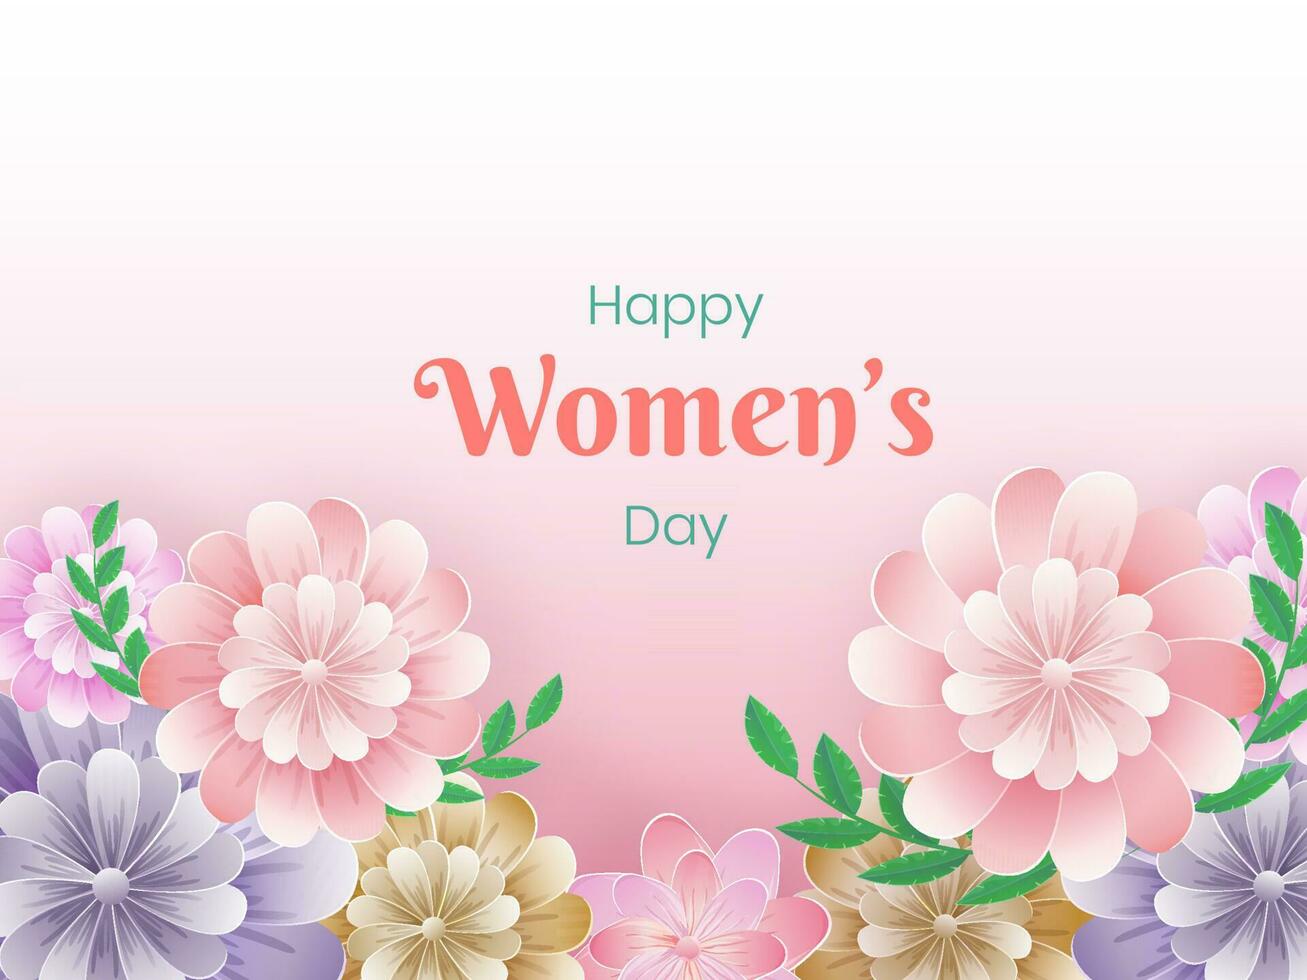 feliz mulheres dia cumprimento cartão com lindo flores e folhas decorado em lustroso Rosa fundo. vetor